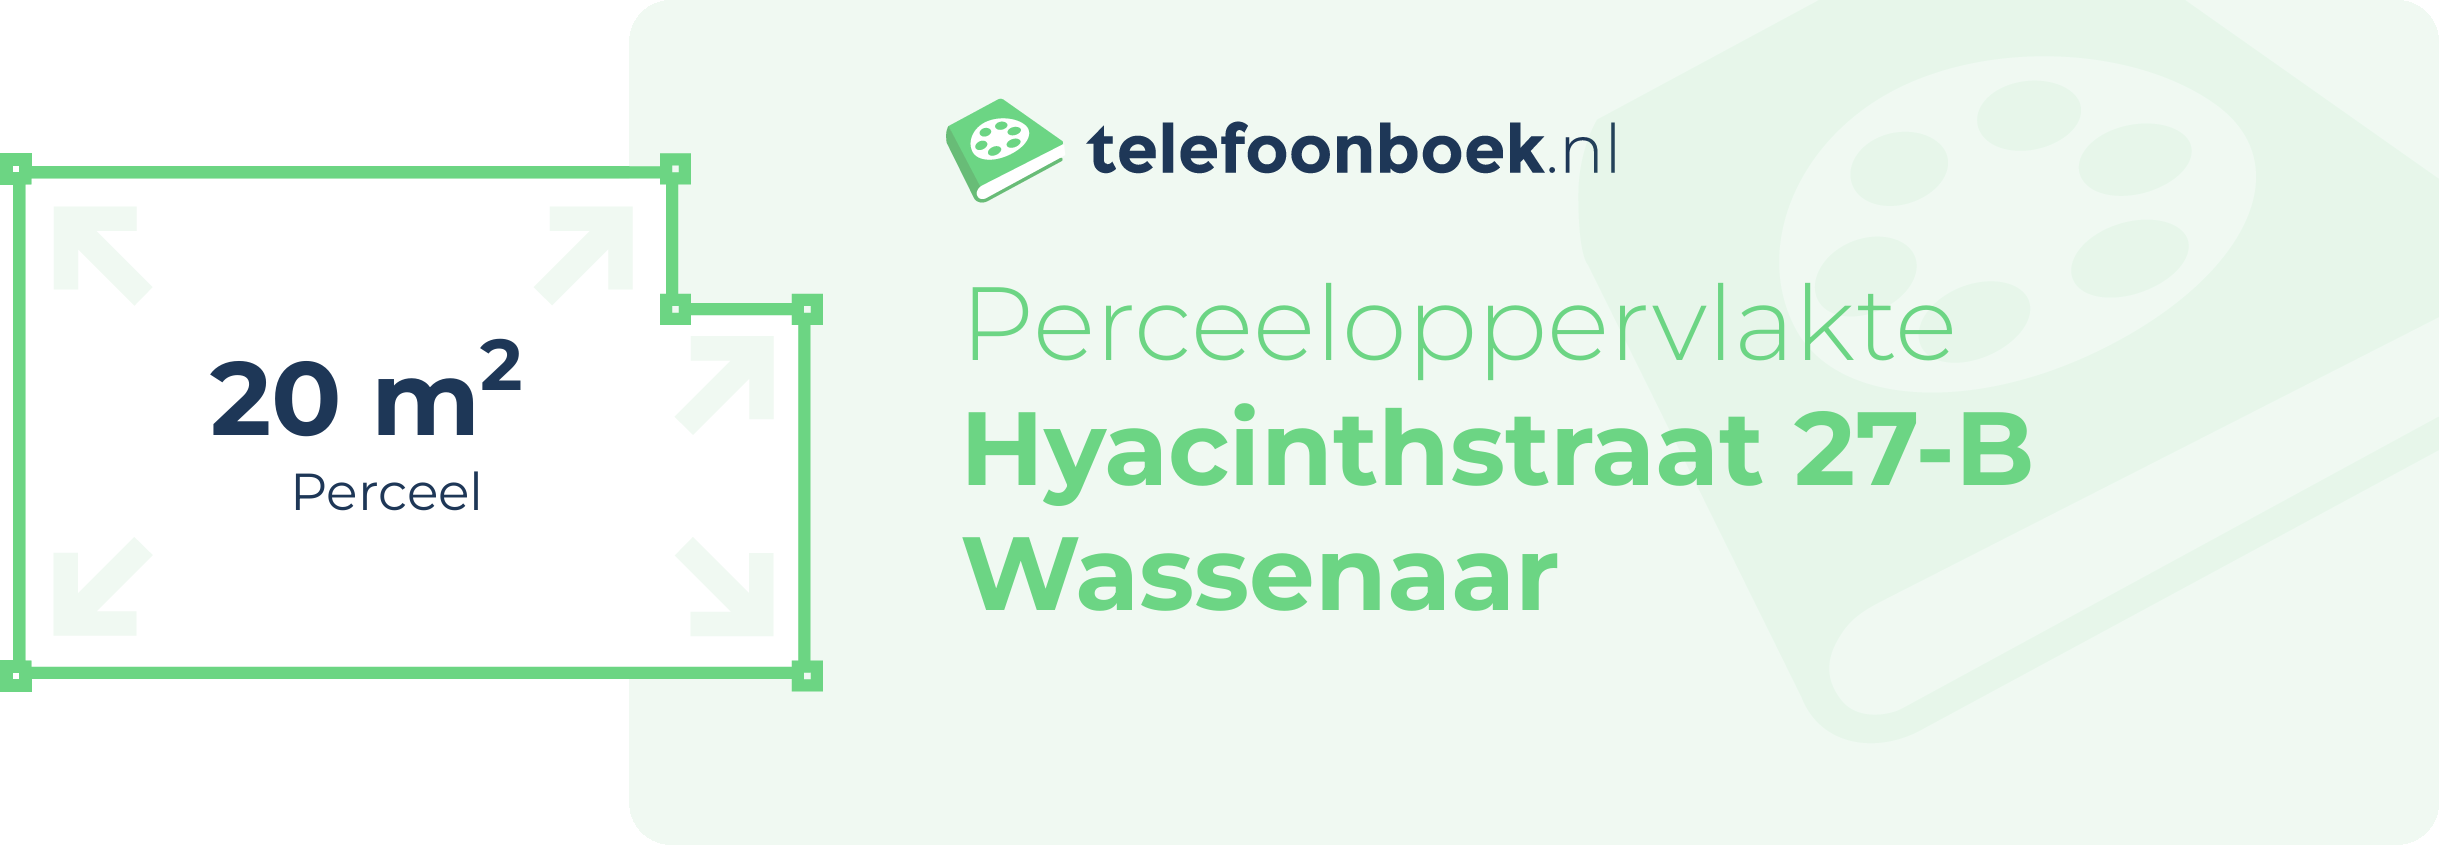 Perceeloppervlakte Hyacinthstraat 27-B Wassenaar